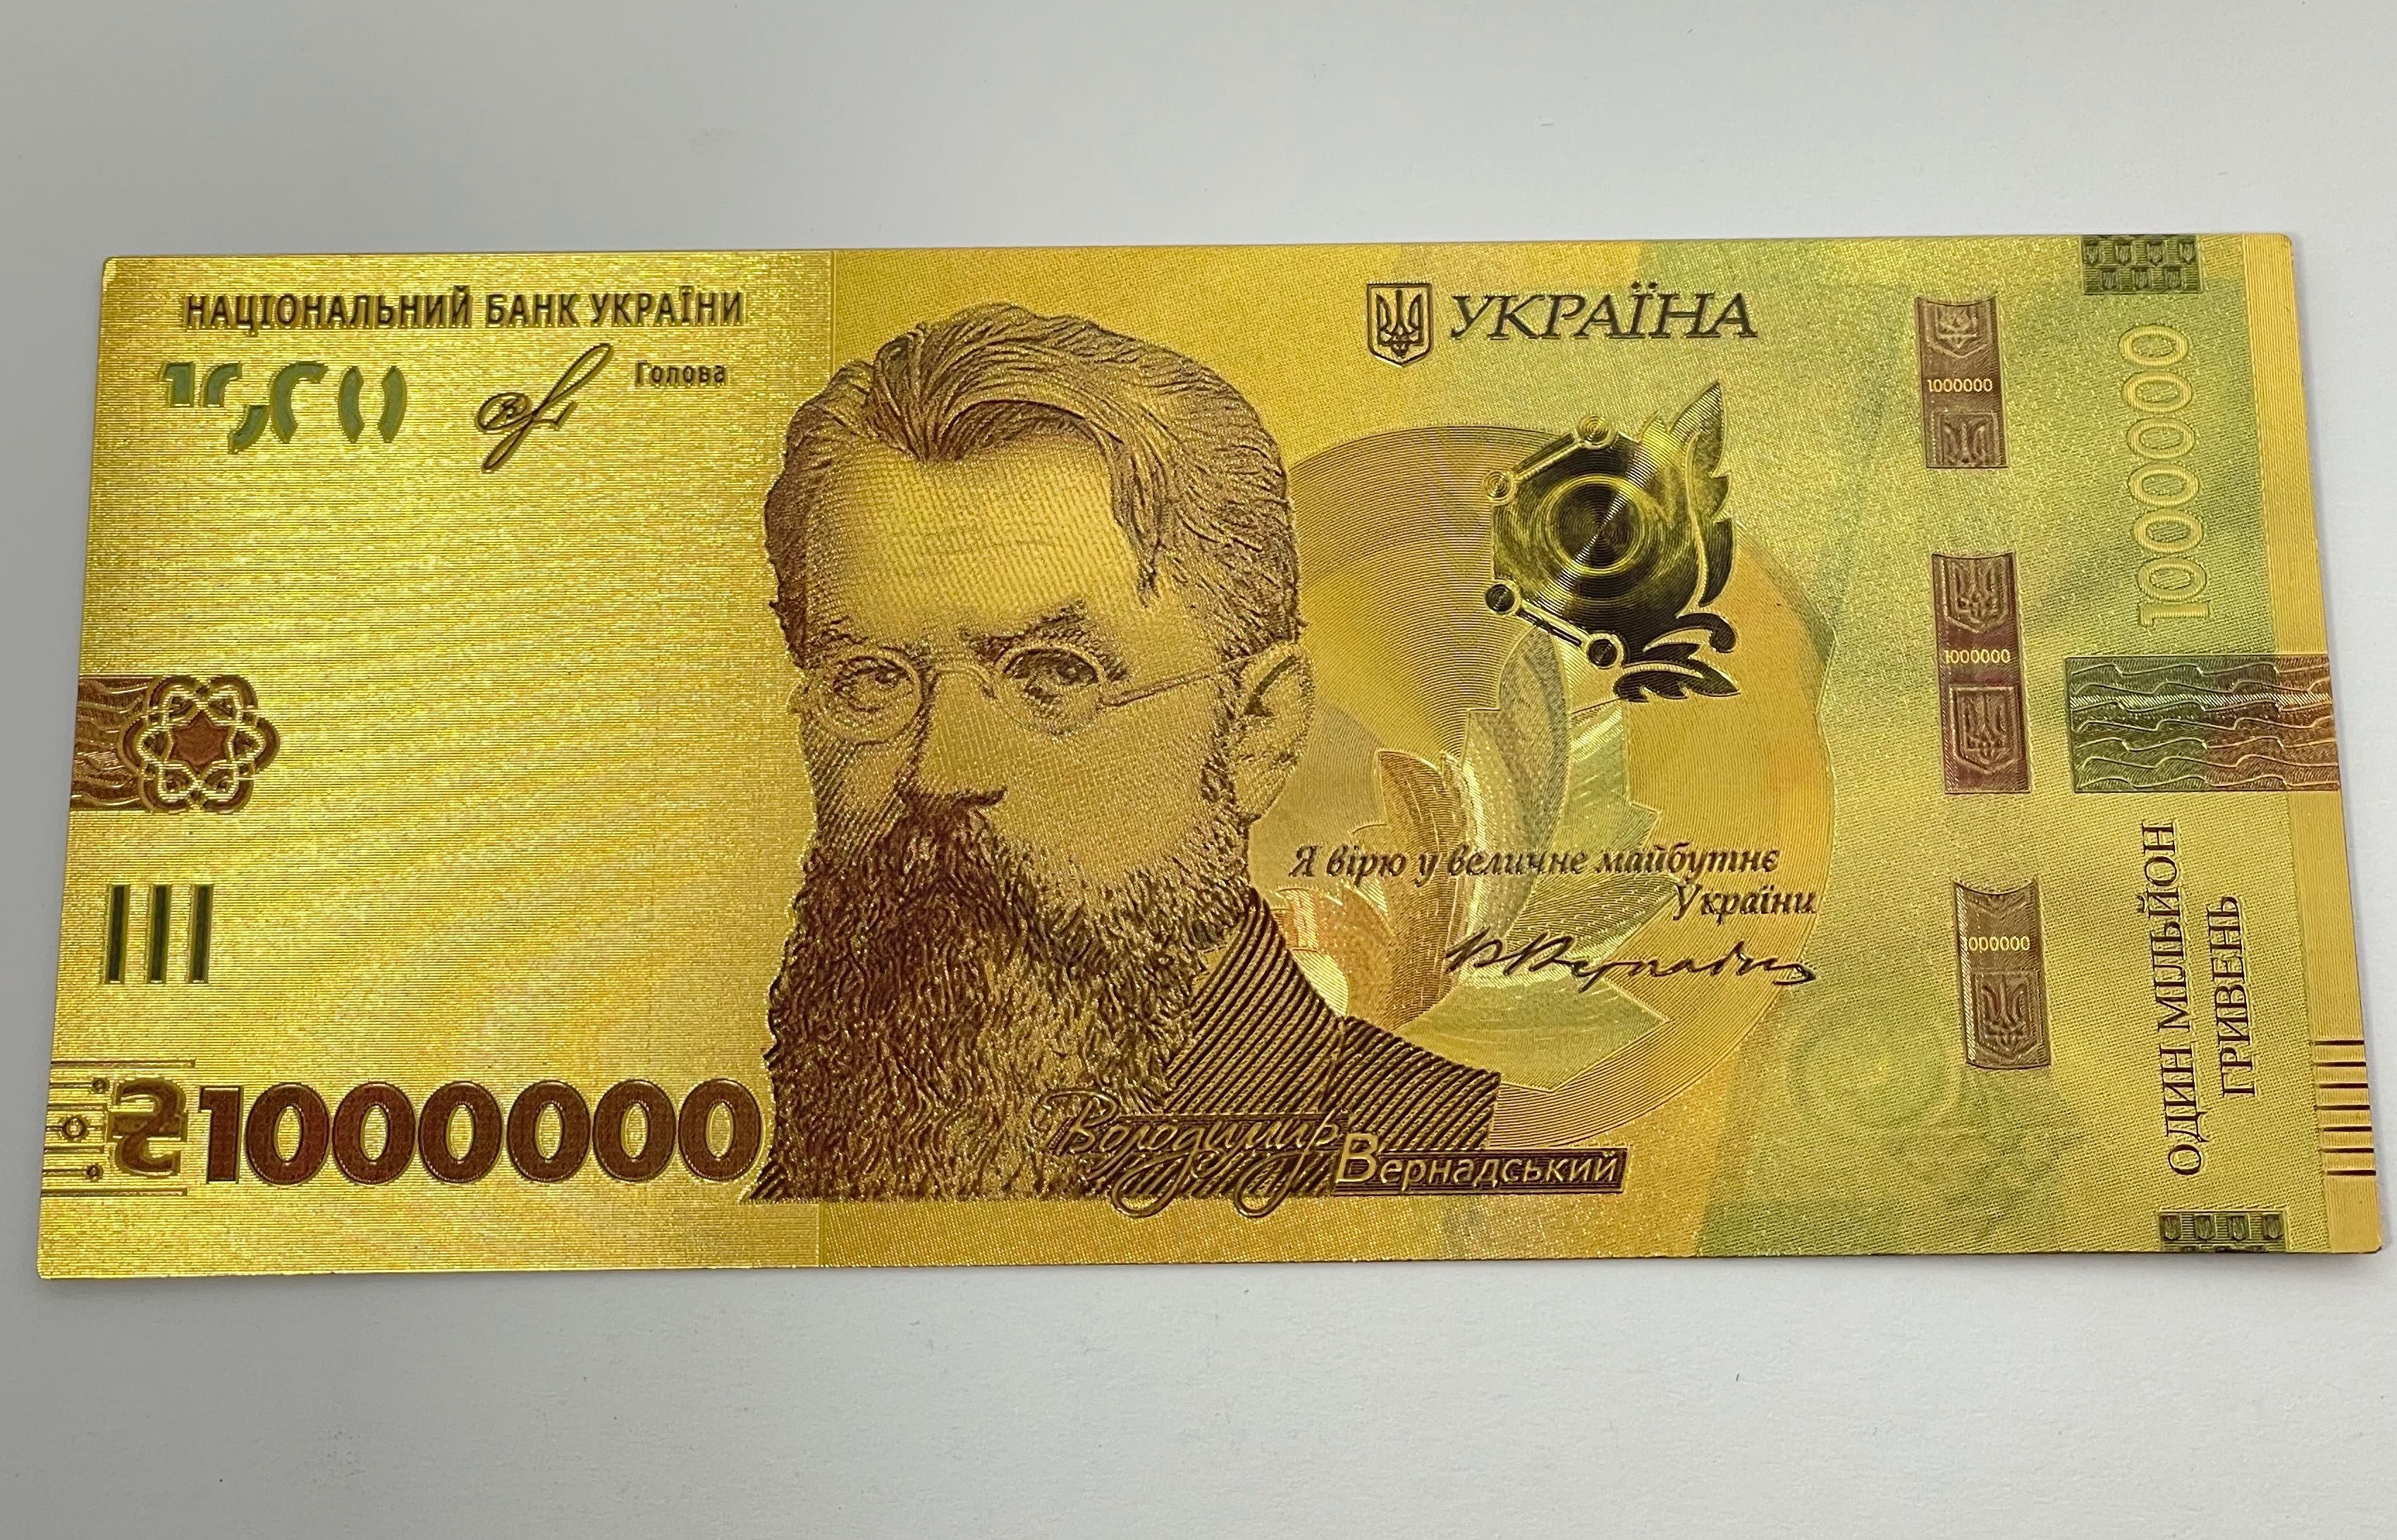 Nota de lembrança de 1 milhão de hryvnia ucraniano